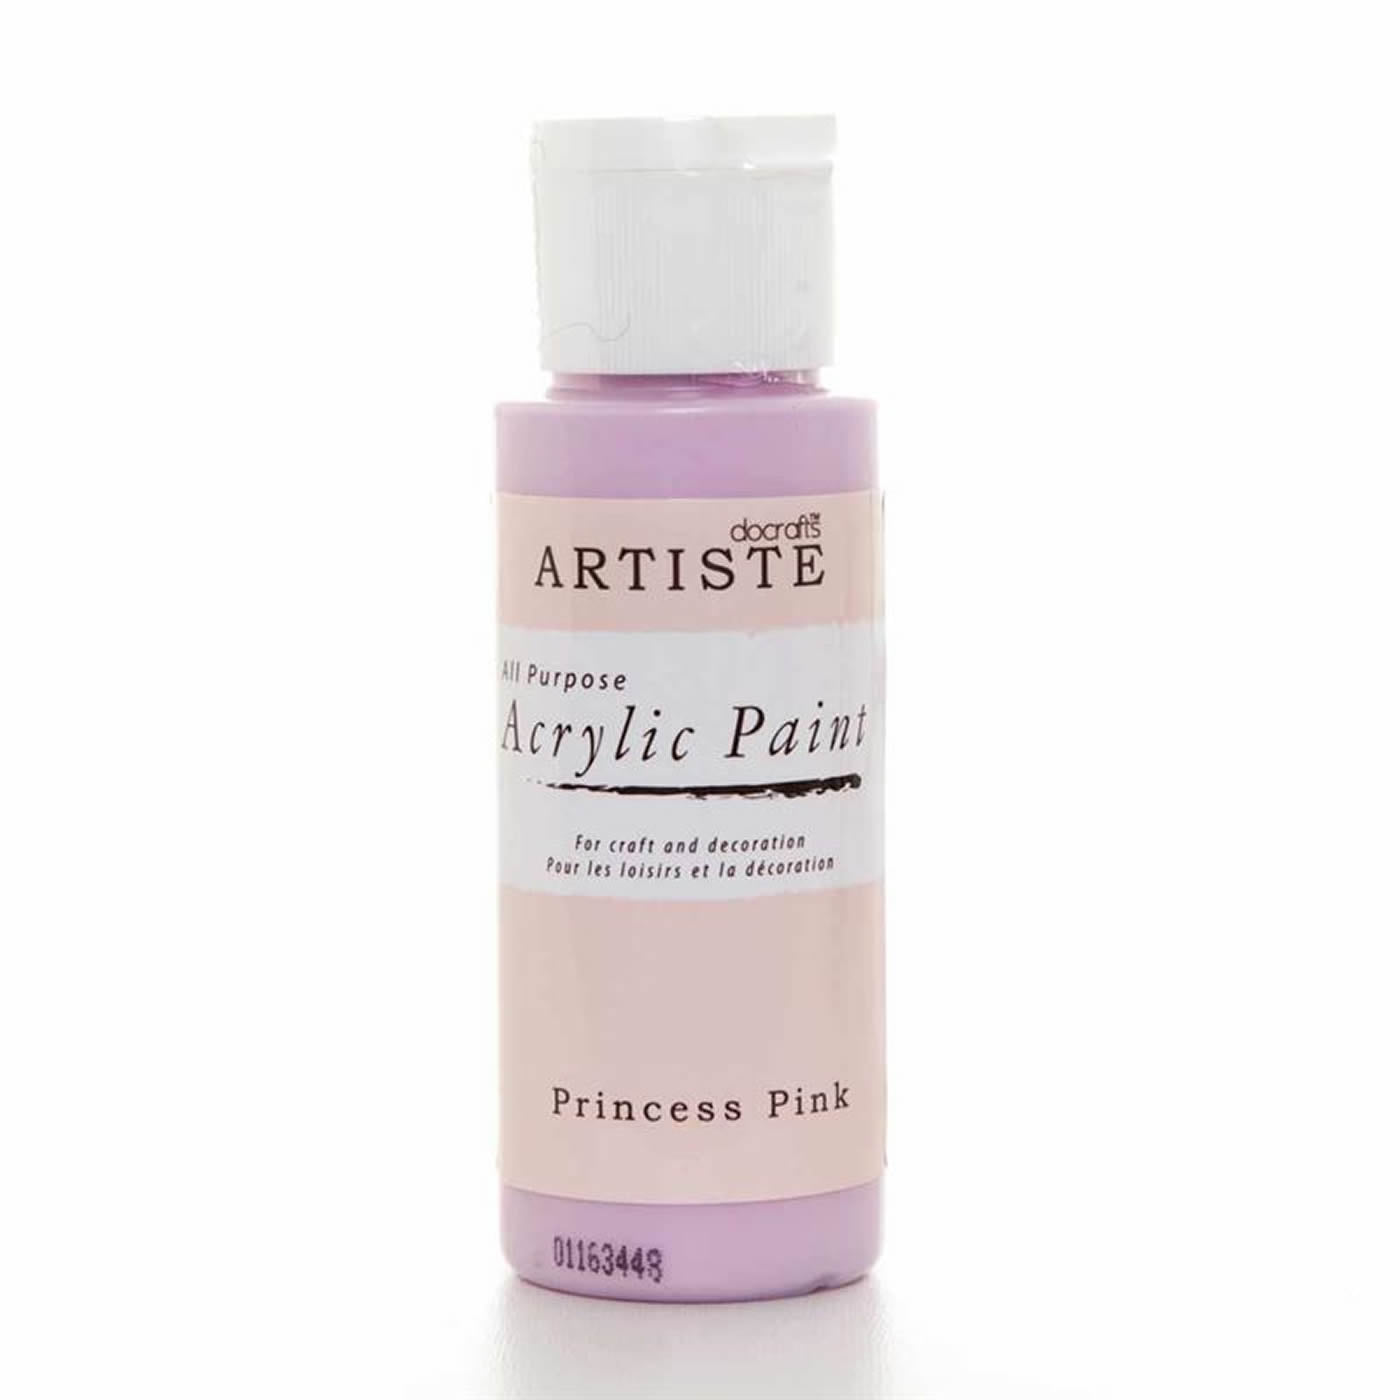 Acrylic Paint Princess Pink